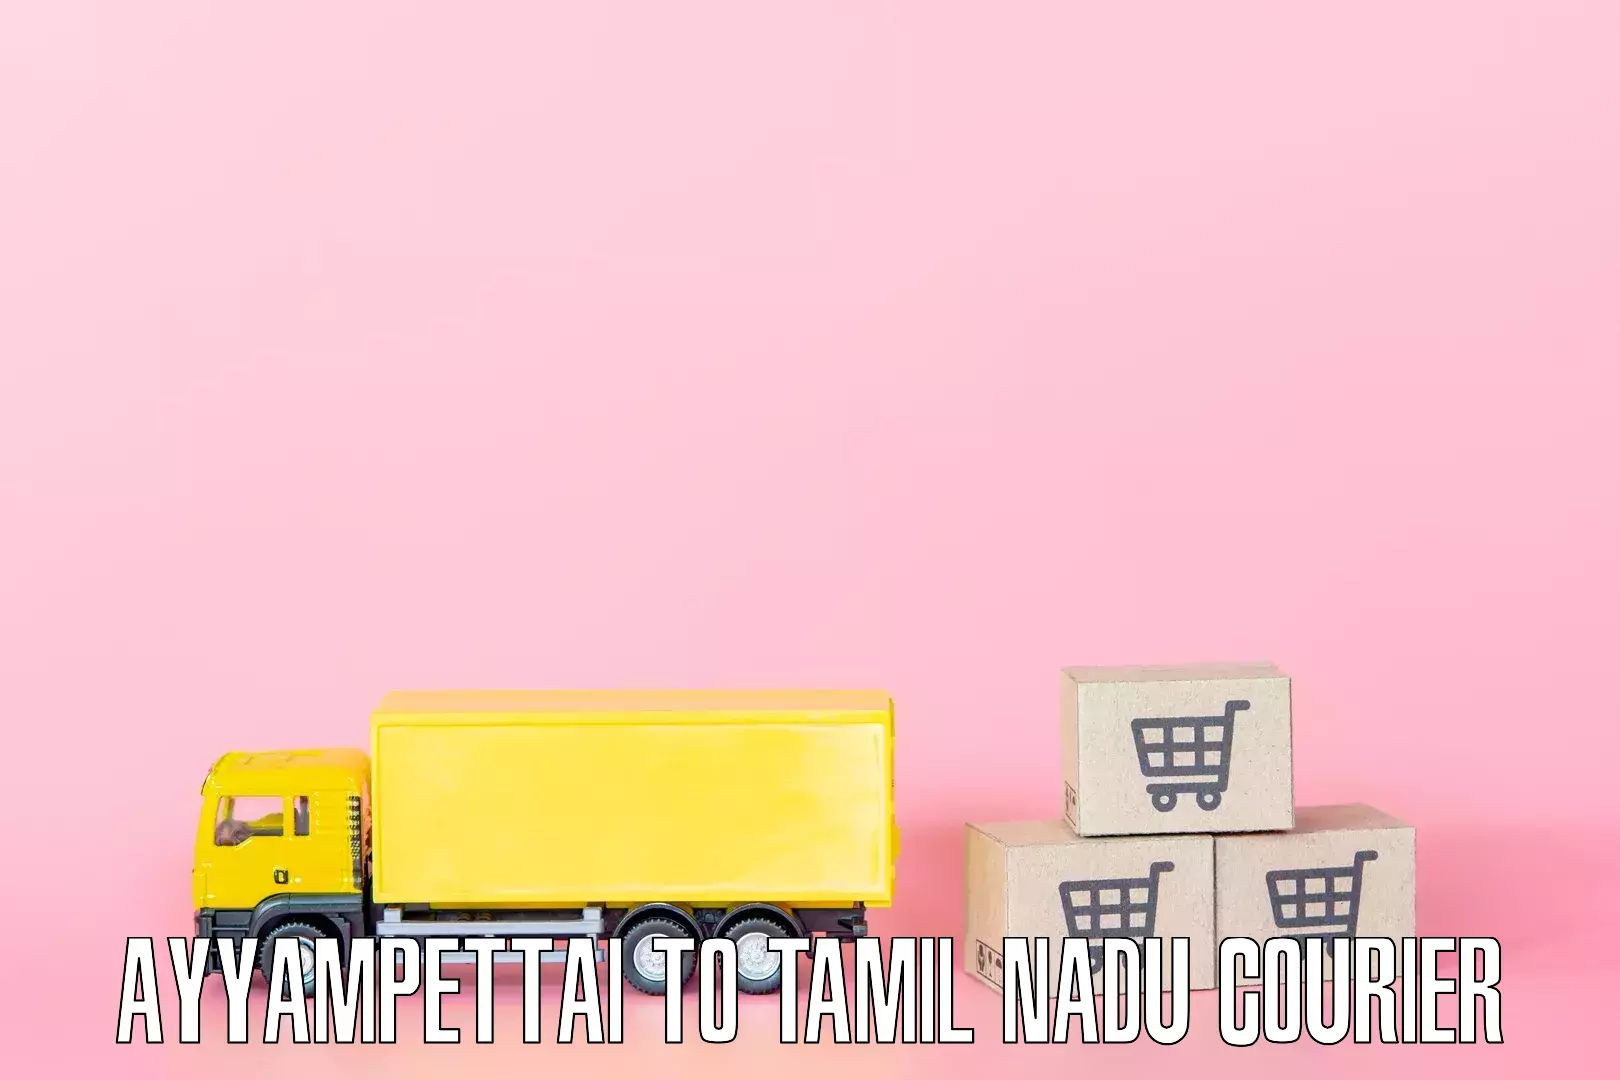 Home goods moving company Ayyampettai to Ambattur